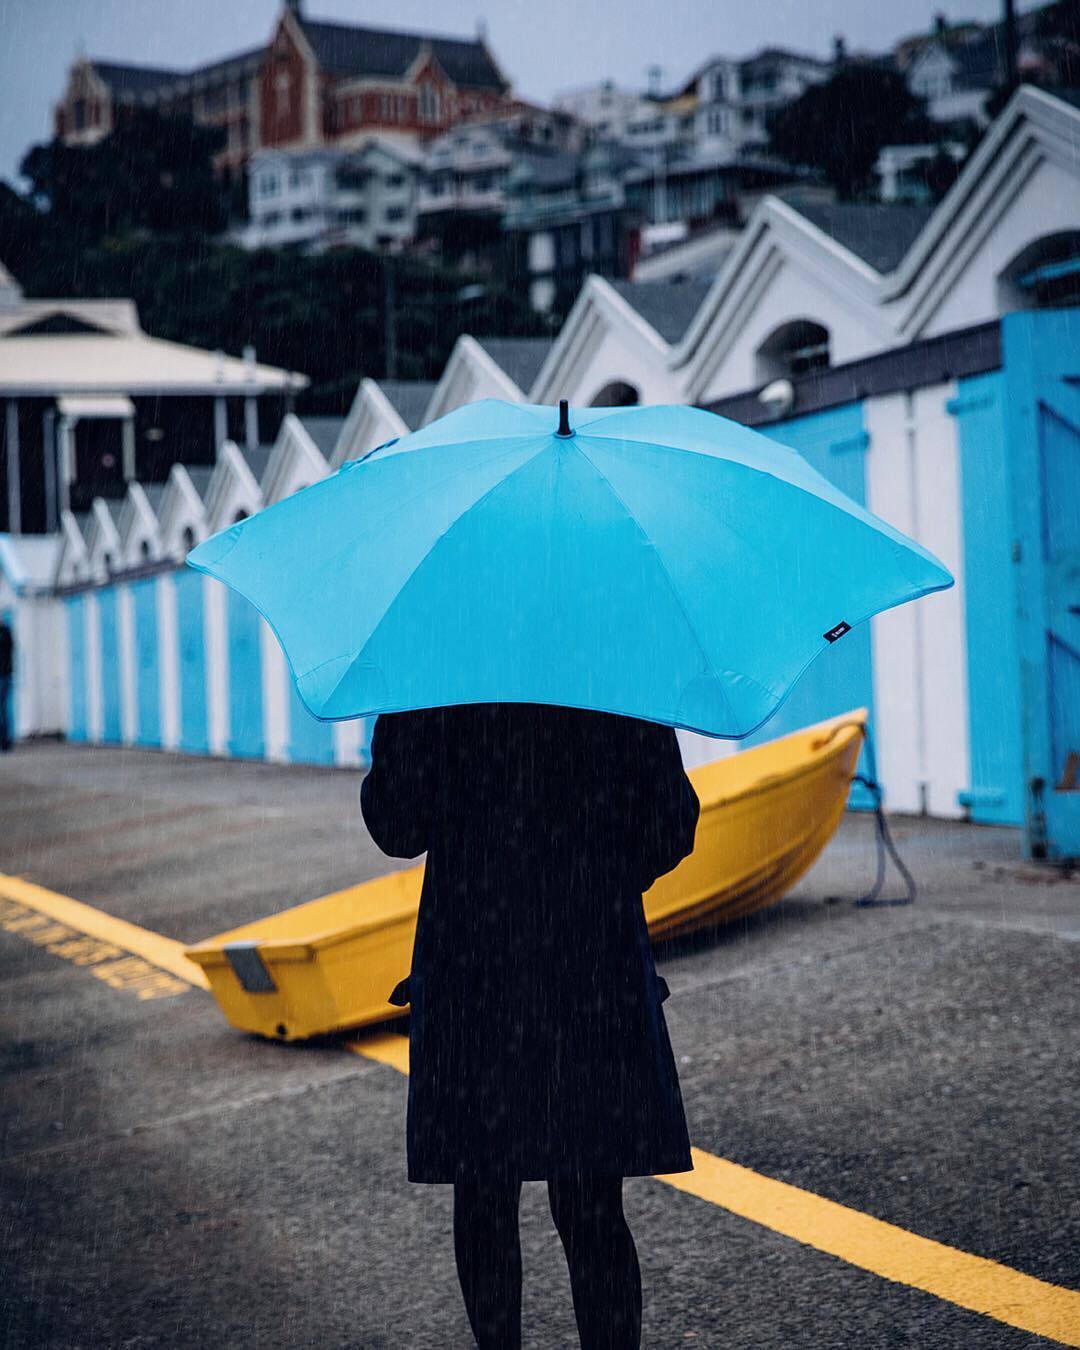 Blunt esernyő BLUNT™ CLASSIC BLACK esernyő